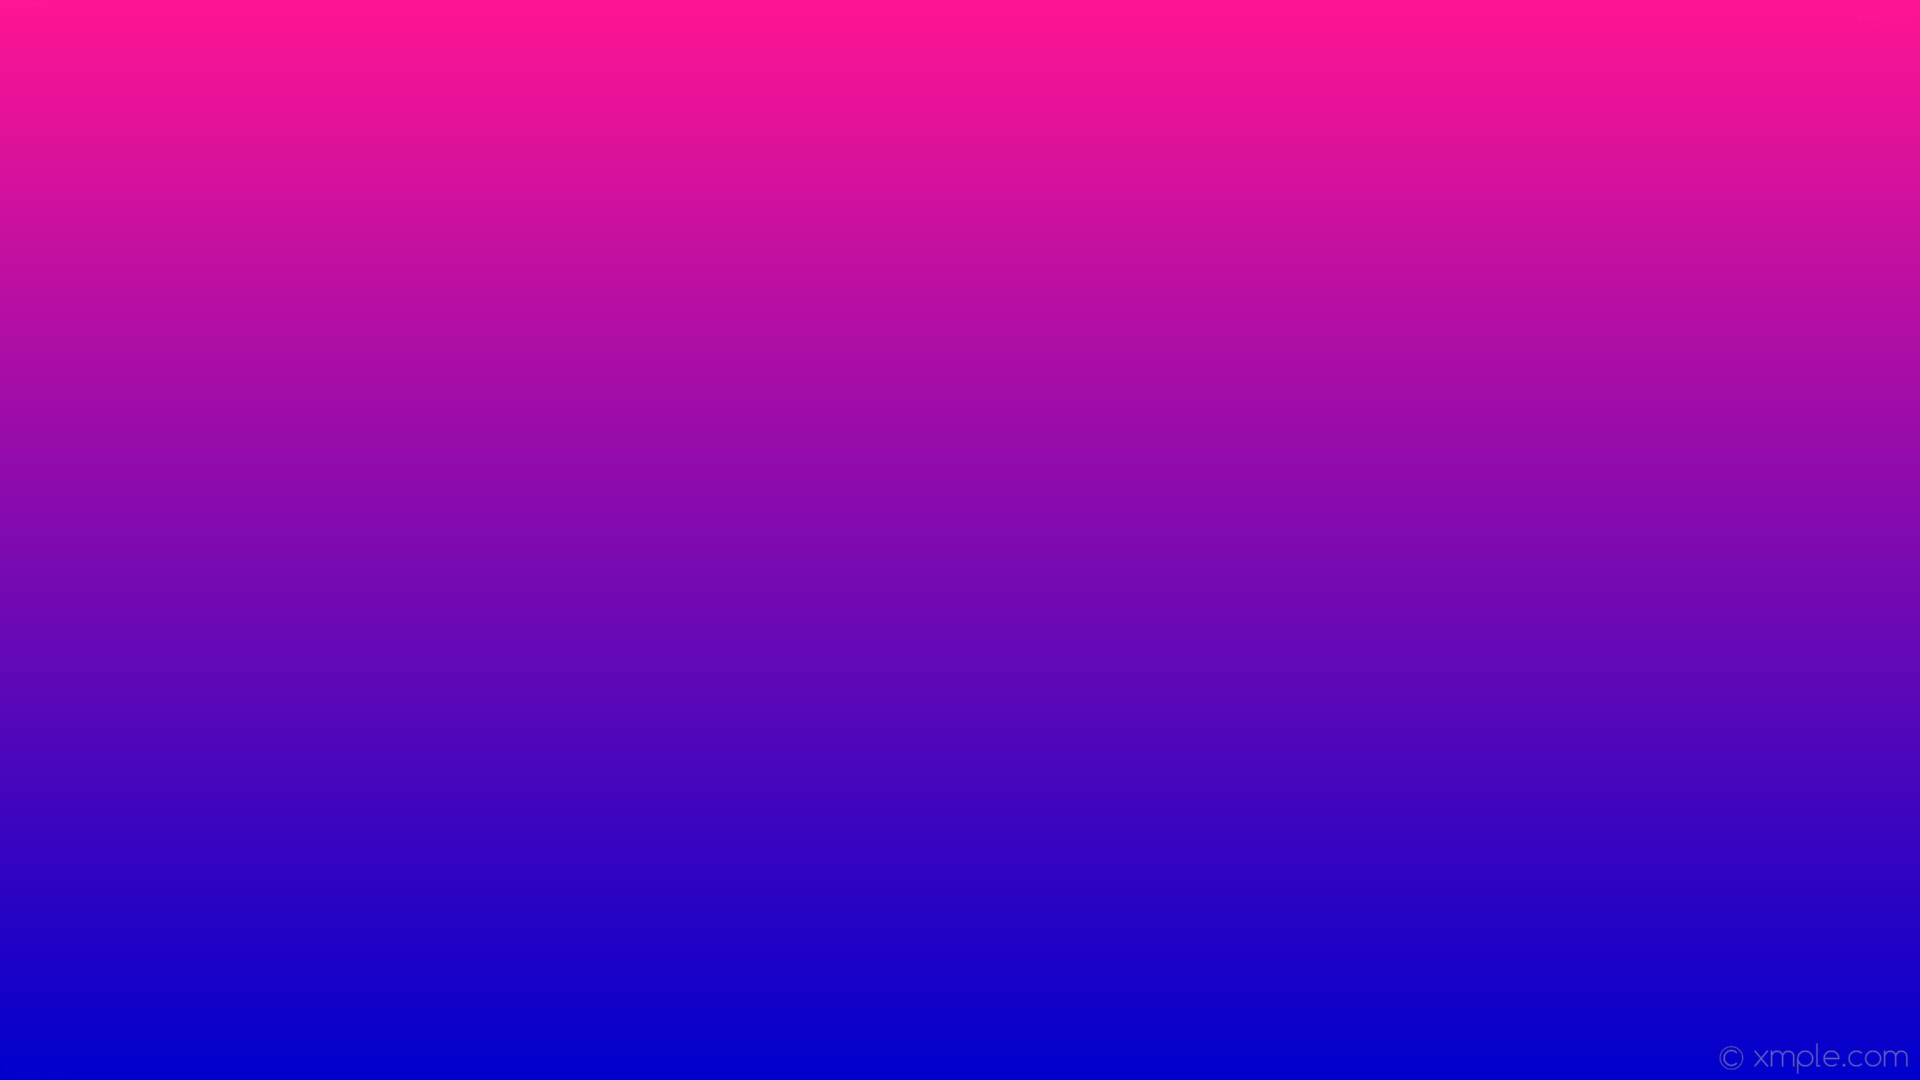 1920x1080 wallpaper blue gradient pink linear medium blue deep pink #0000cd #ff1493  270Â°